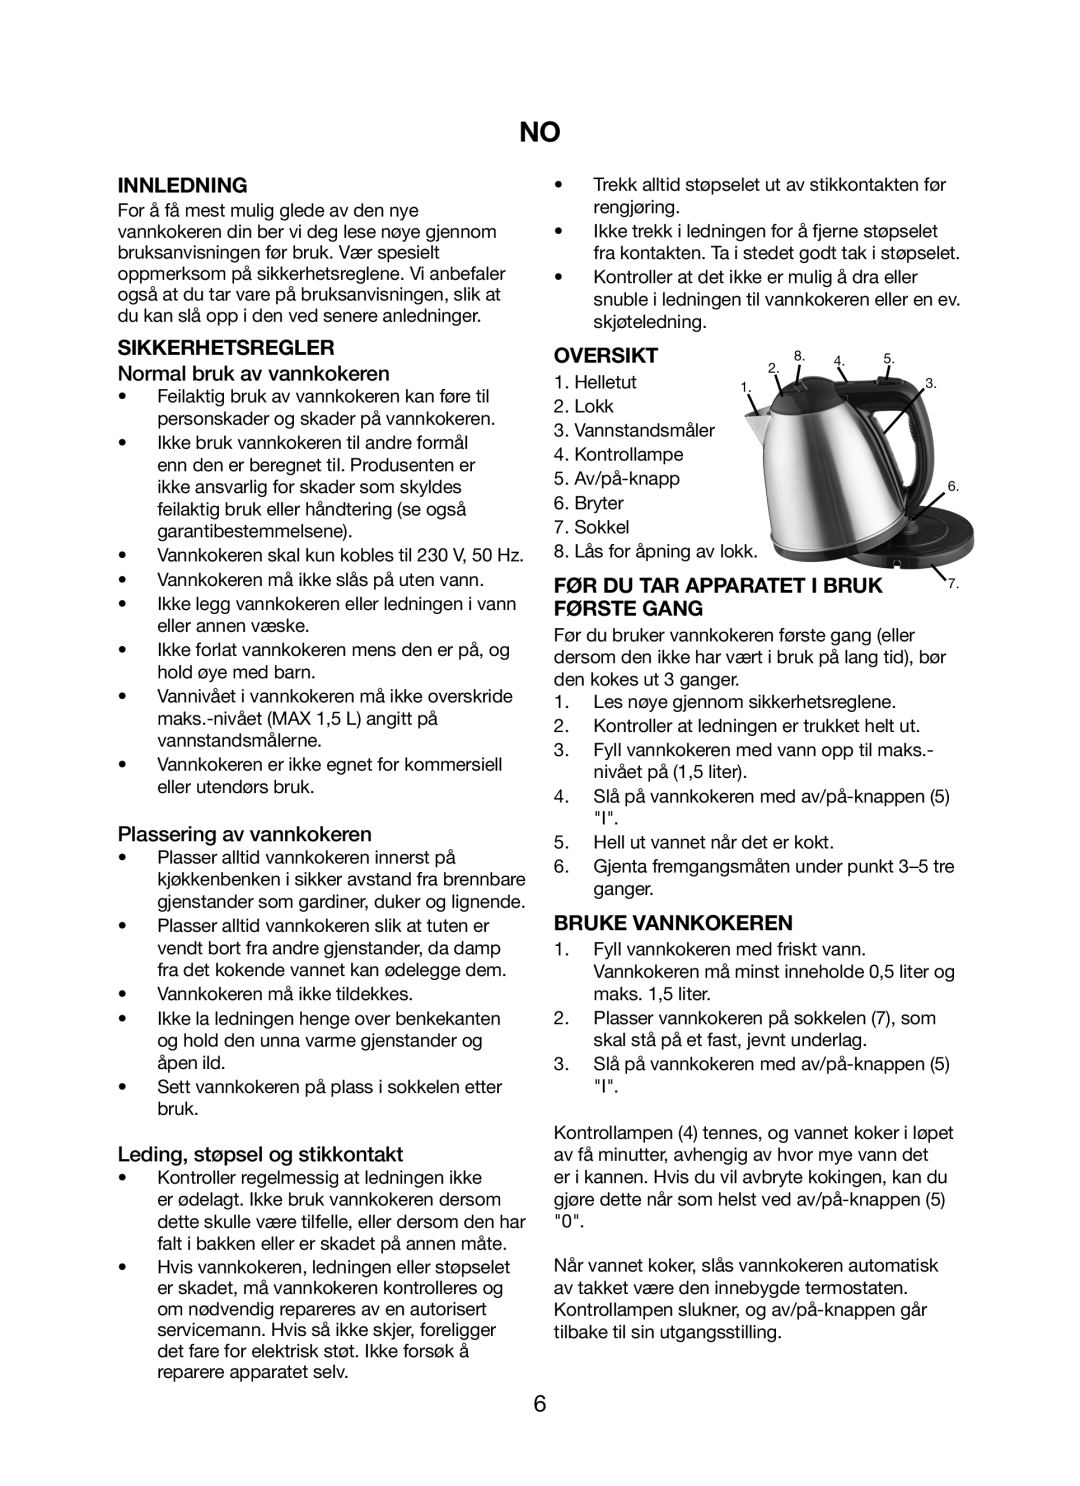 Melissa 245-035 manual Innledning, Sikkerhetsregler, Oversikt, Før Du Tar Apparatet I Bruk, Første Gang, Bruke Vannkokeren 